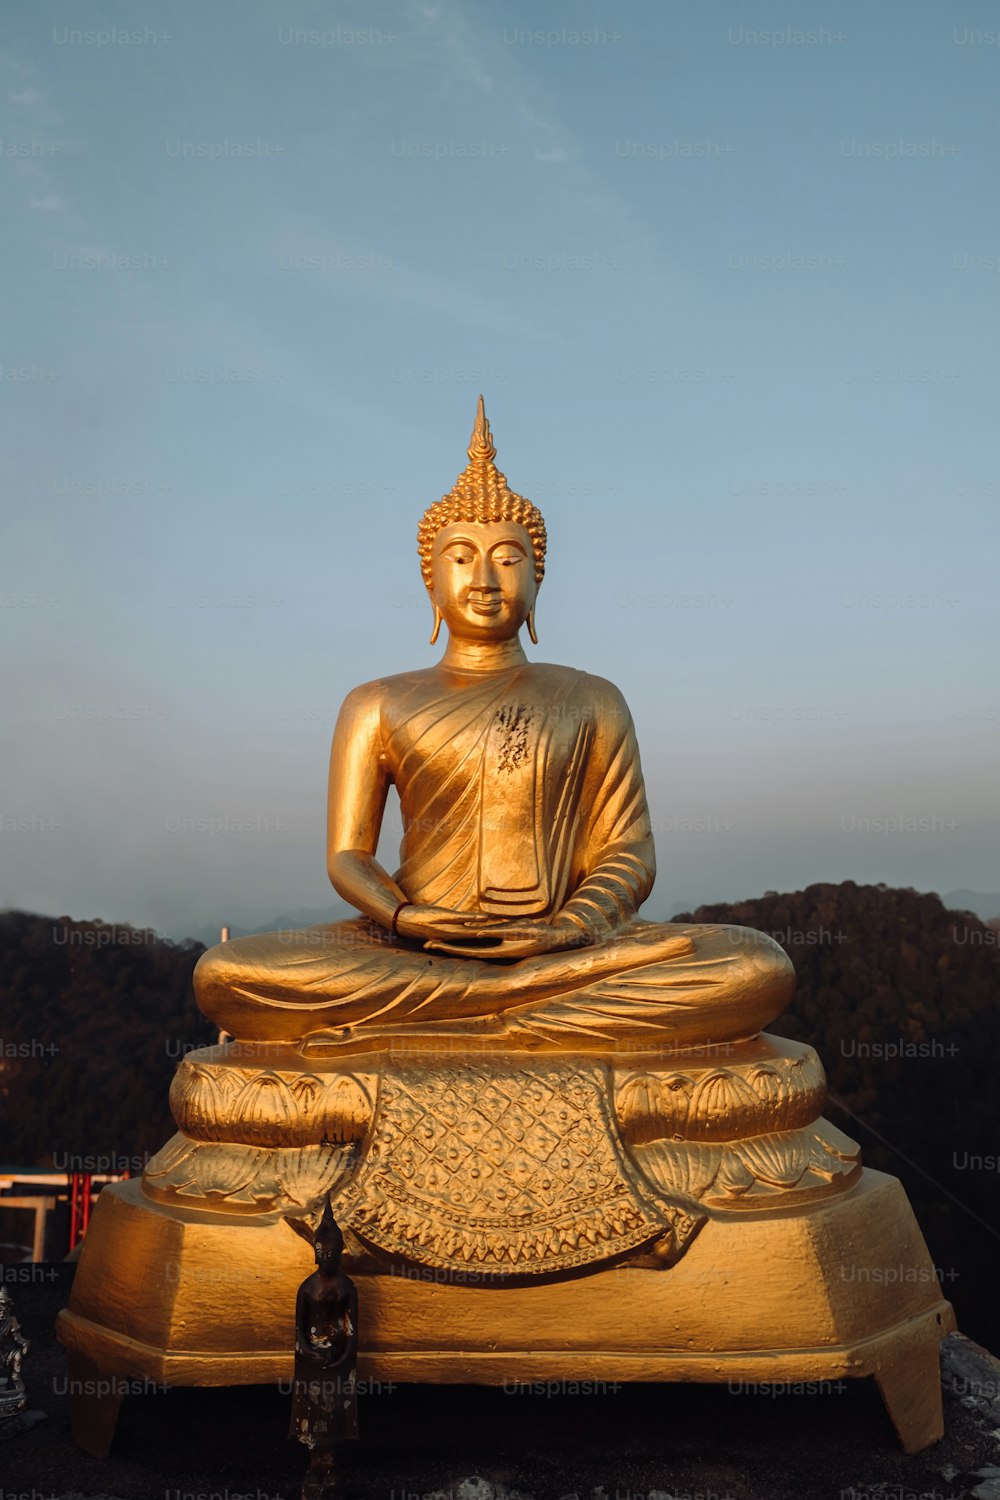 Eine goldene Buddha-Statue, die auf einem Felsen sitzt